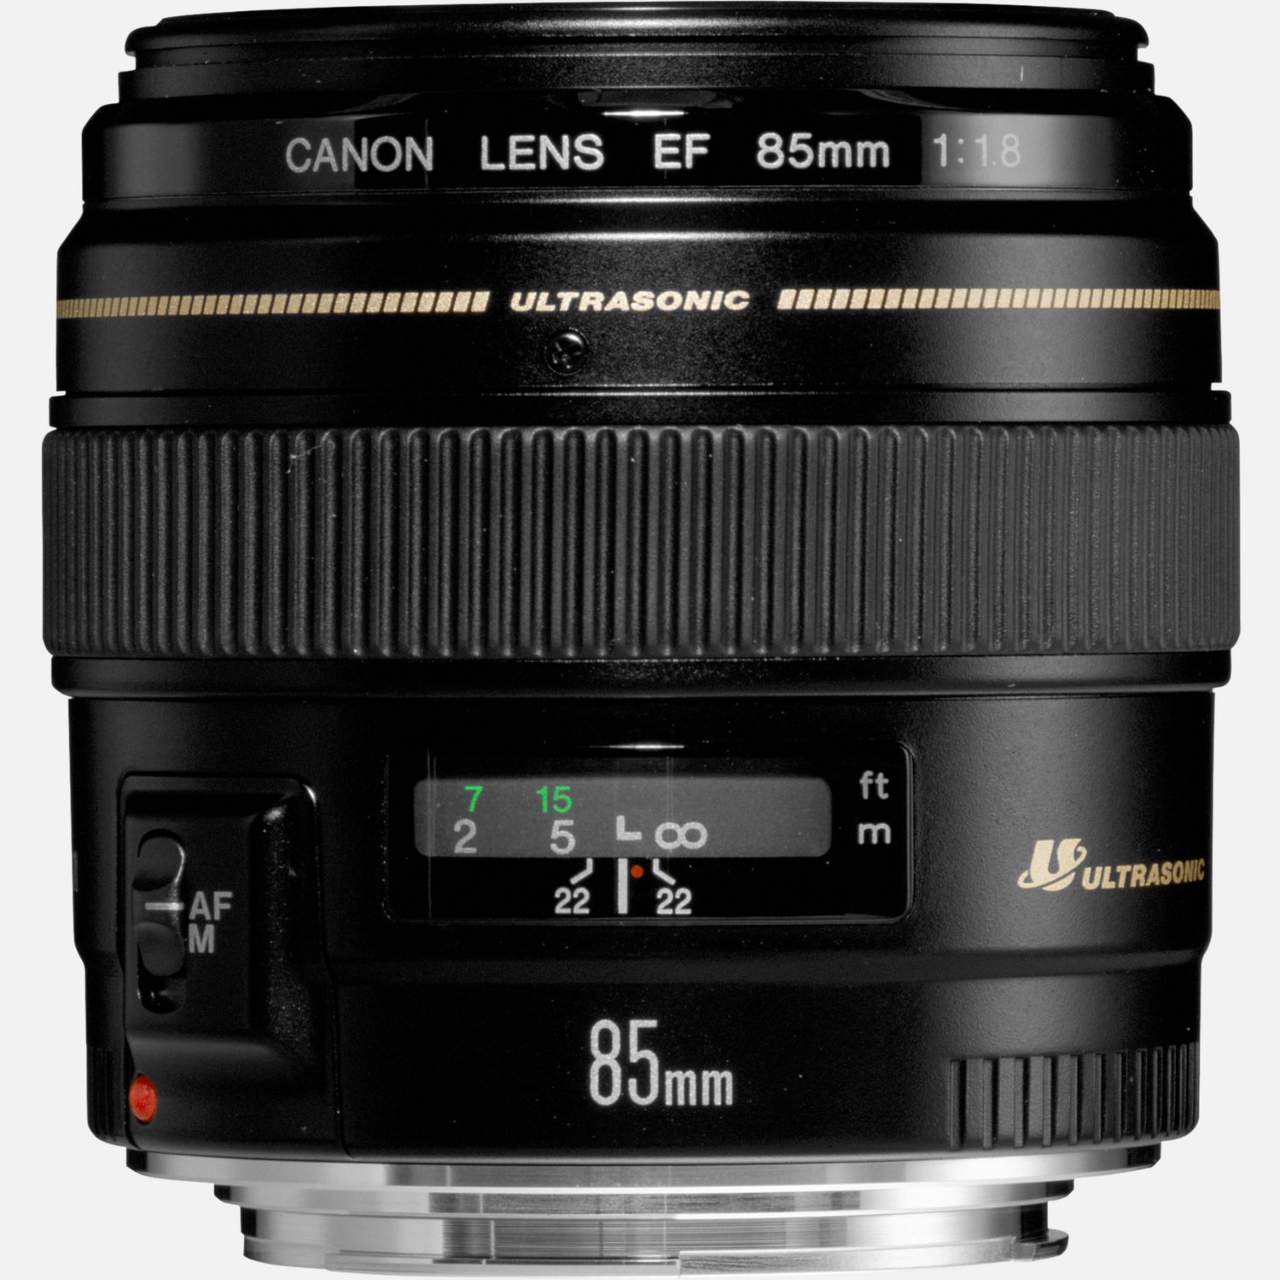 L'obiettivo Canon EF 85mm F/1.8 USM